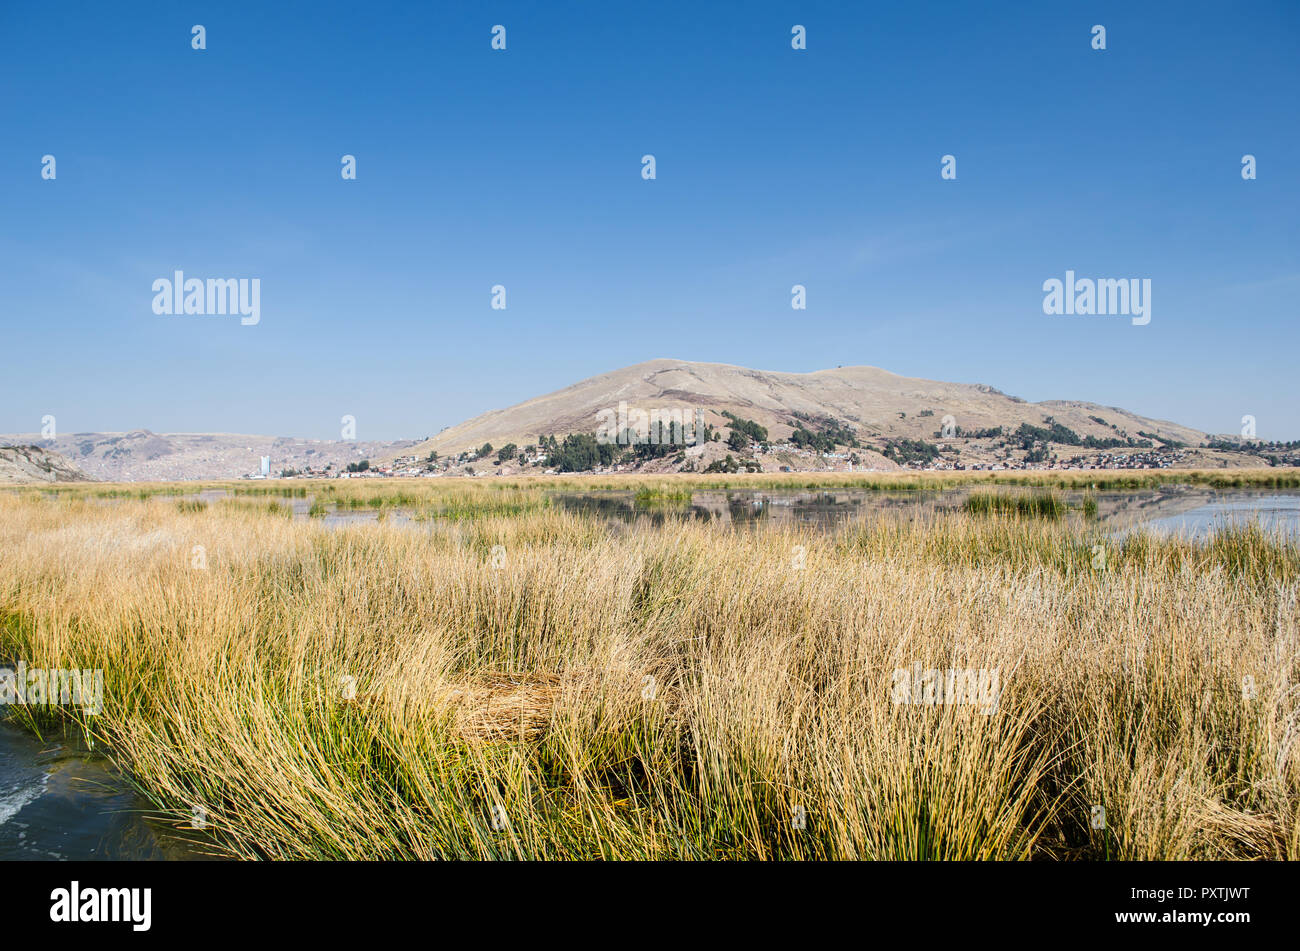 Paisaje típico del lago Titicaca durante la temporada de verano. Foto de stock